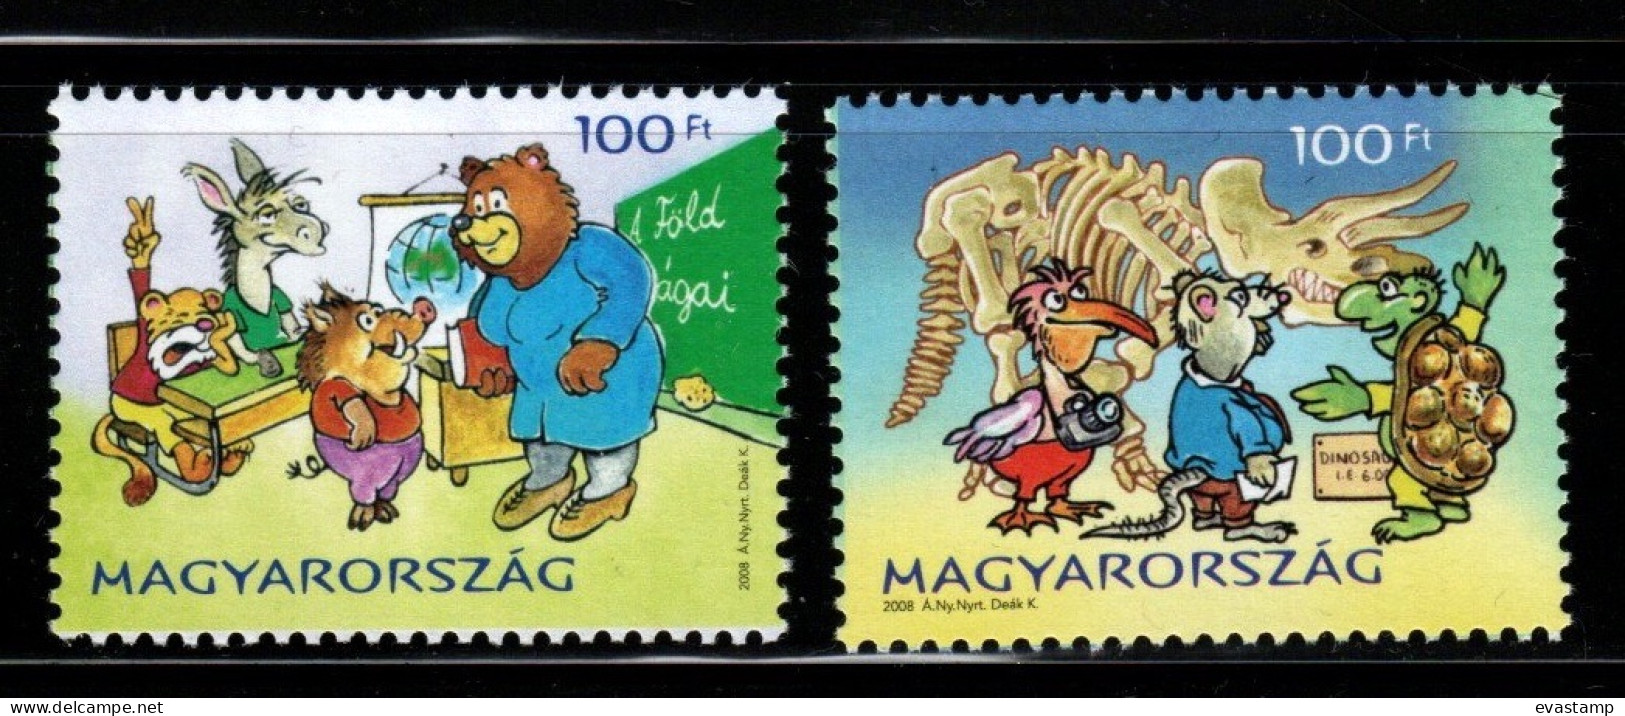 HUNGARY - 2008. Cartoons / Fairy Tales - Fila Village IV. MNH!! - Unused Stamps